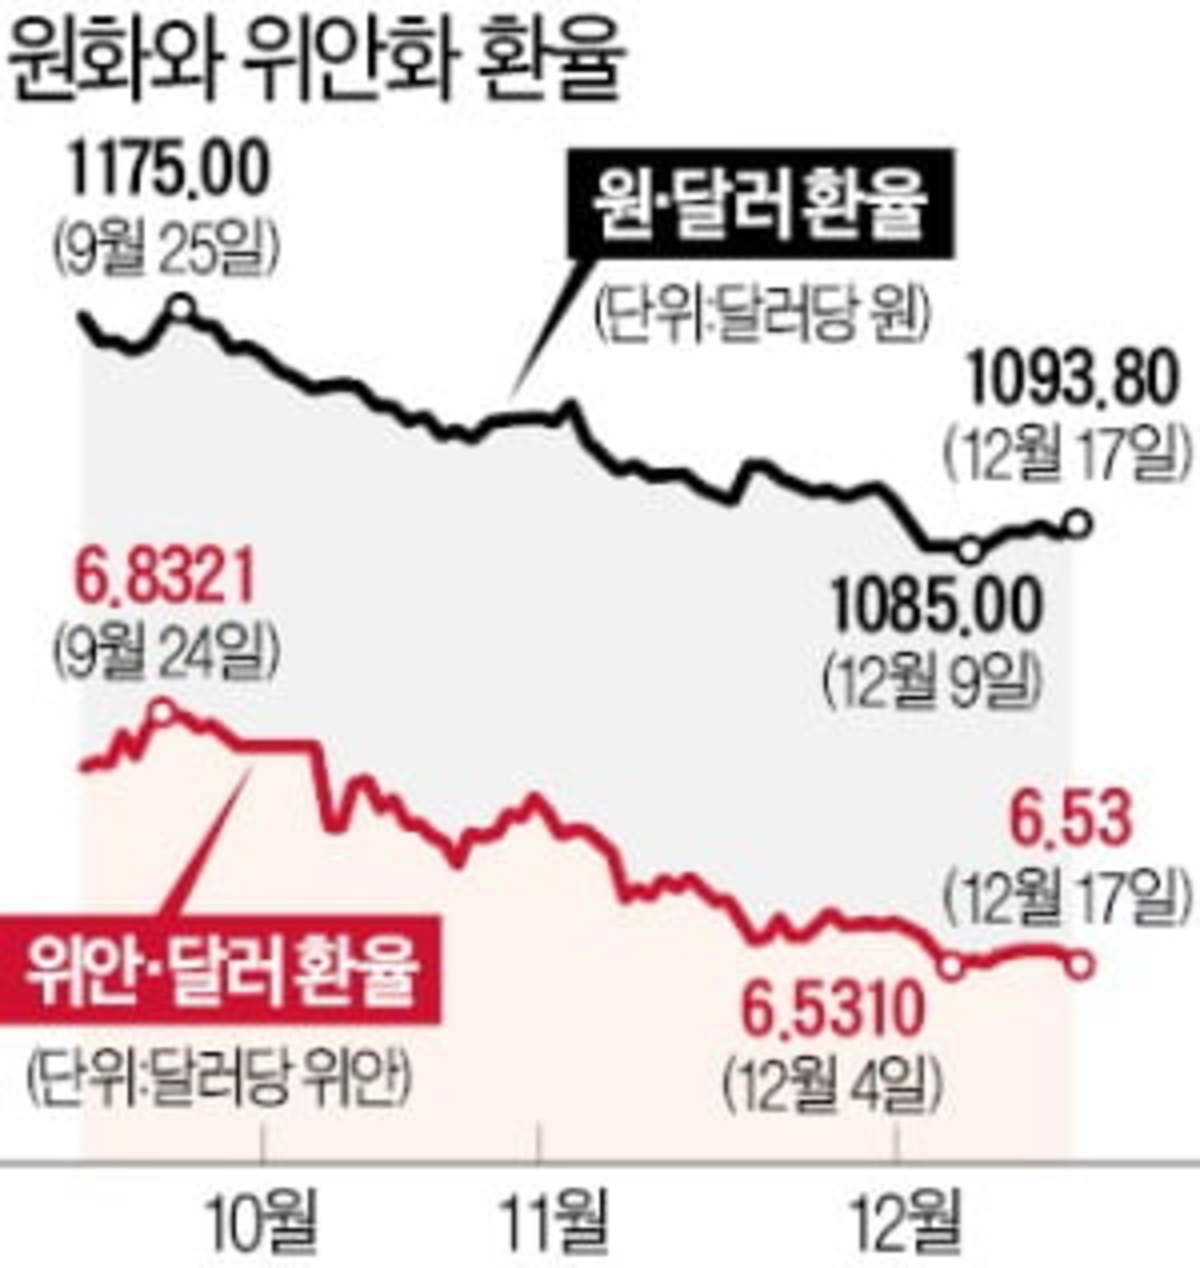 원·달러 환율 1050원 밑돌 수도 | 한국경제